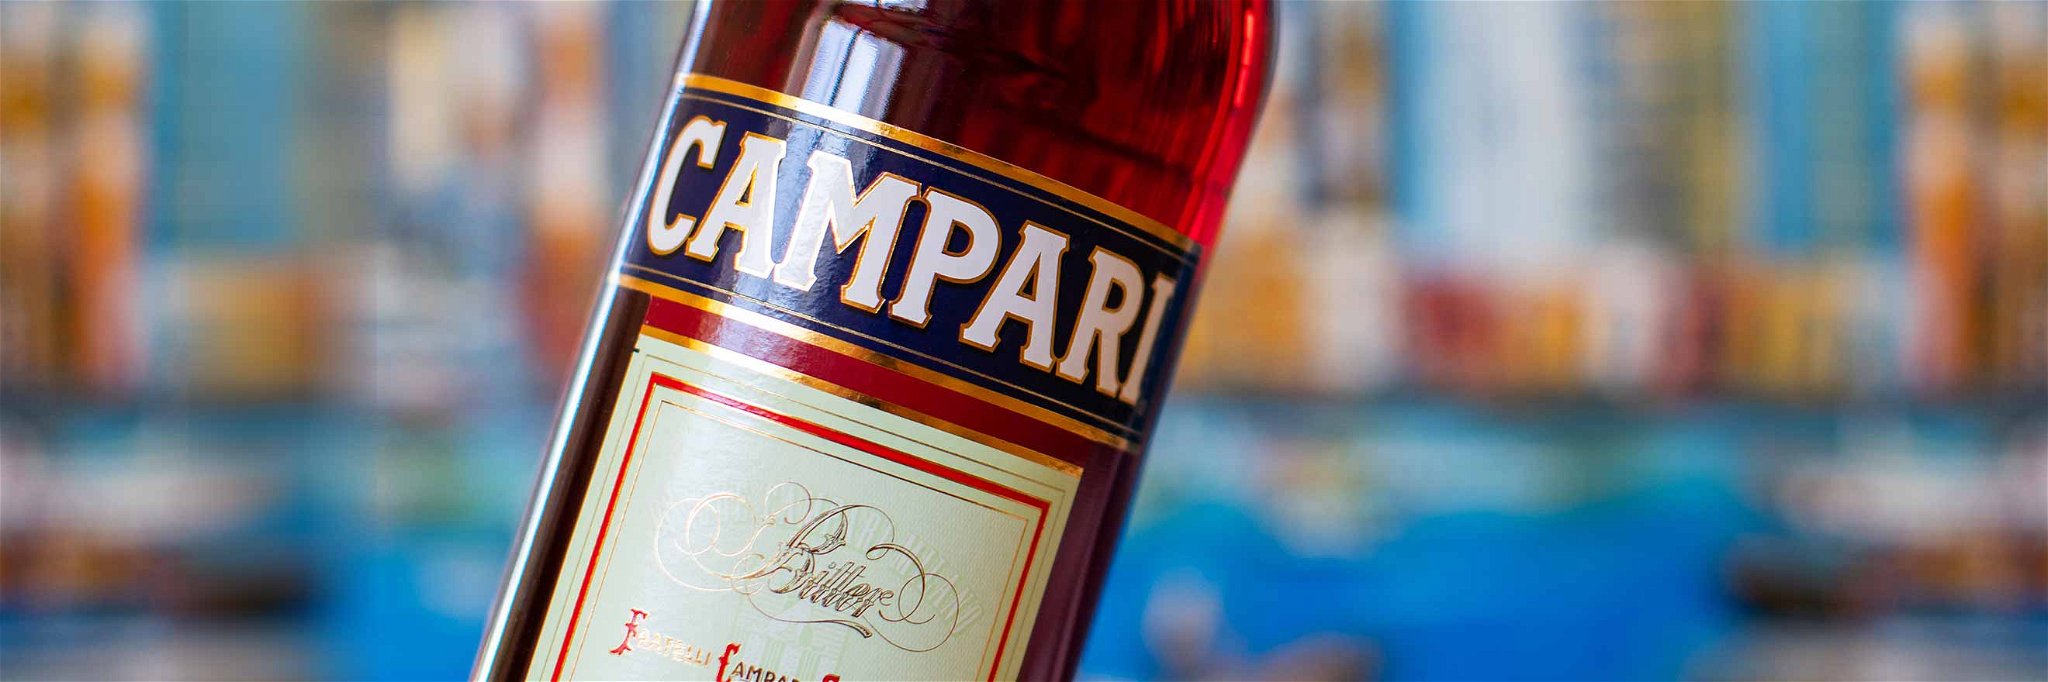 160 Jahre Campari – Falstaff wirft einen Blick zurück.